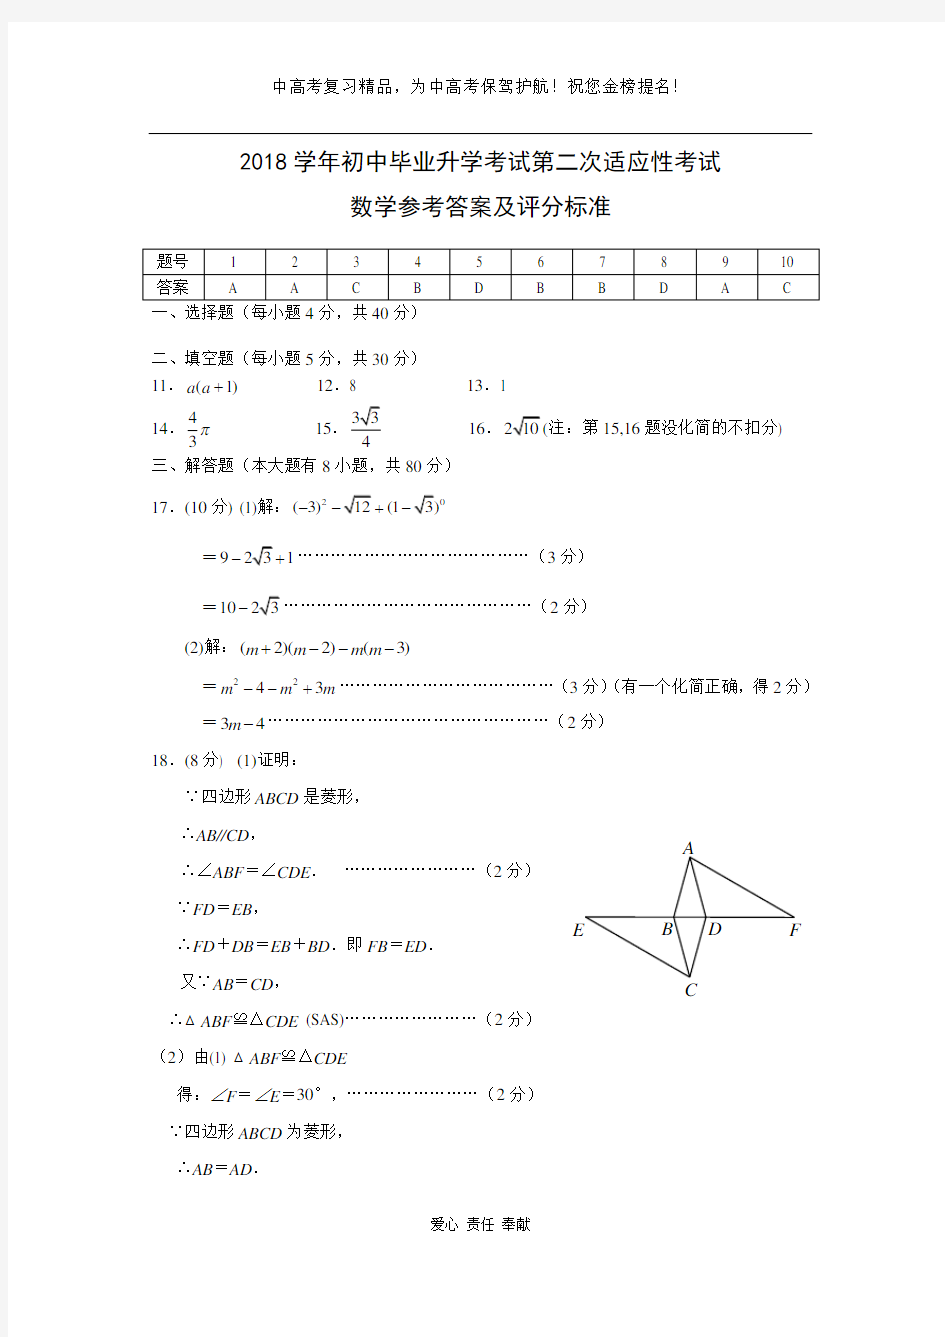 绣山中学二模数学卷参考答案和评分标准(2)